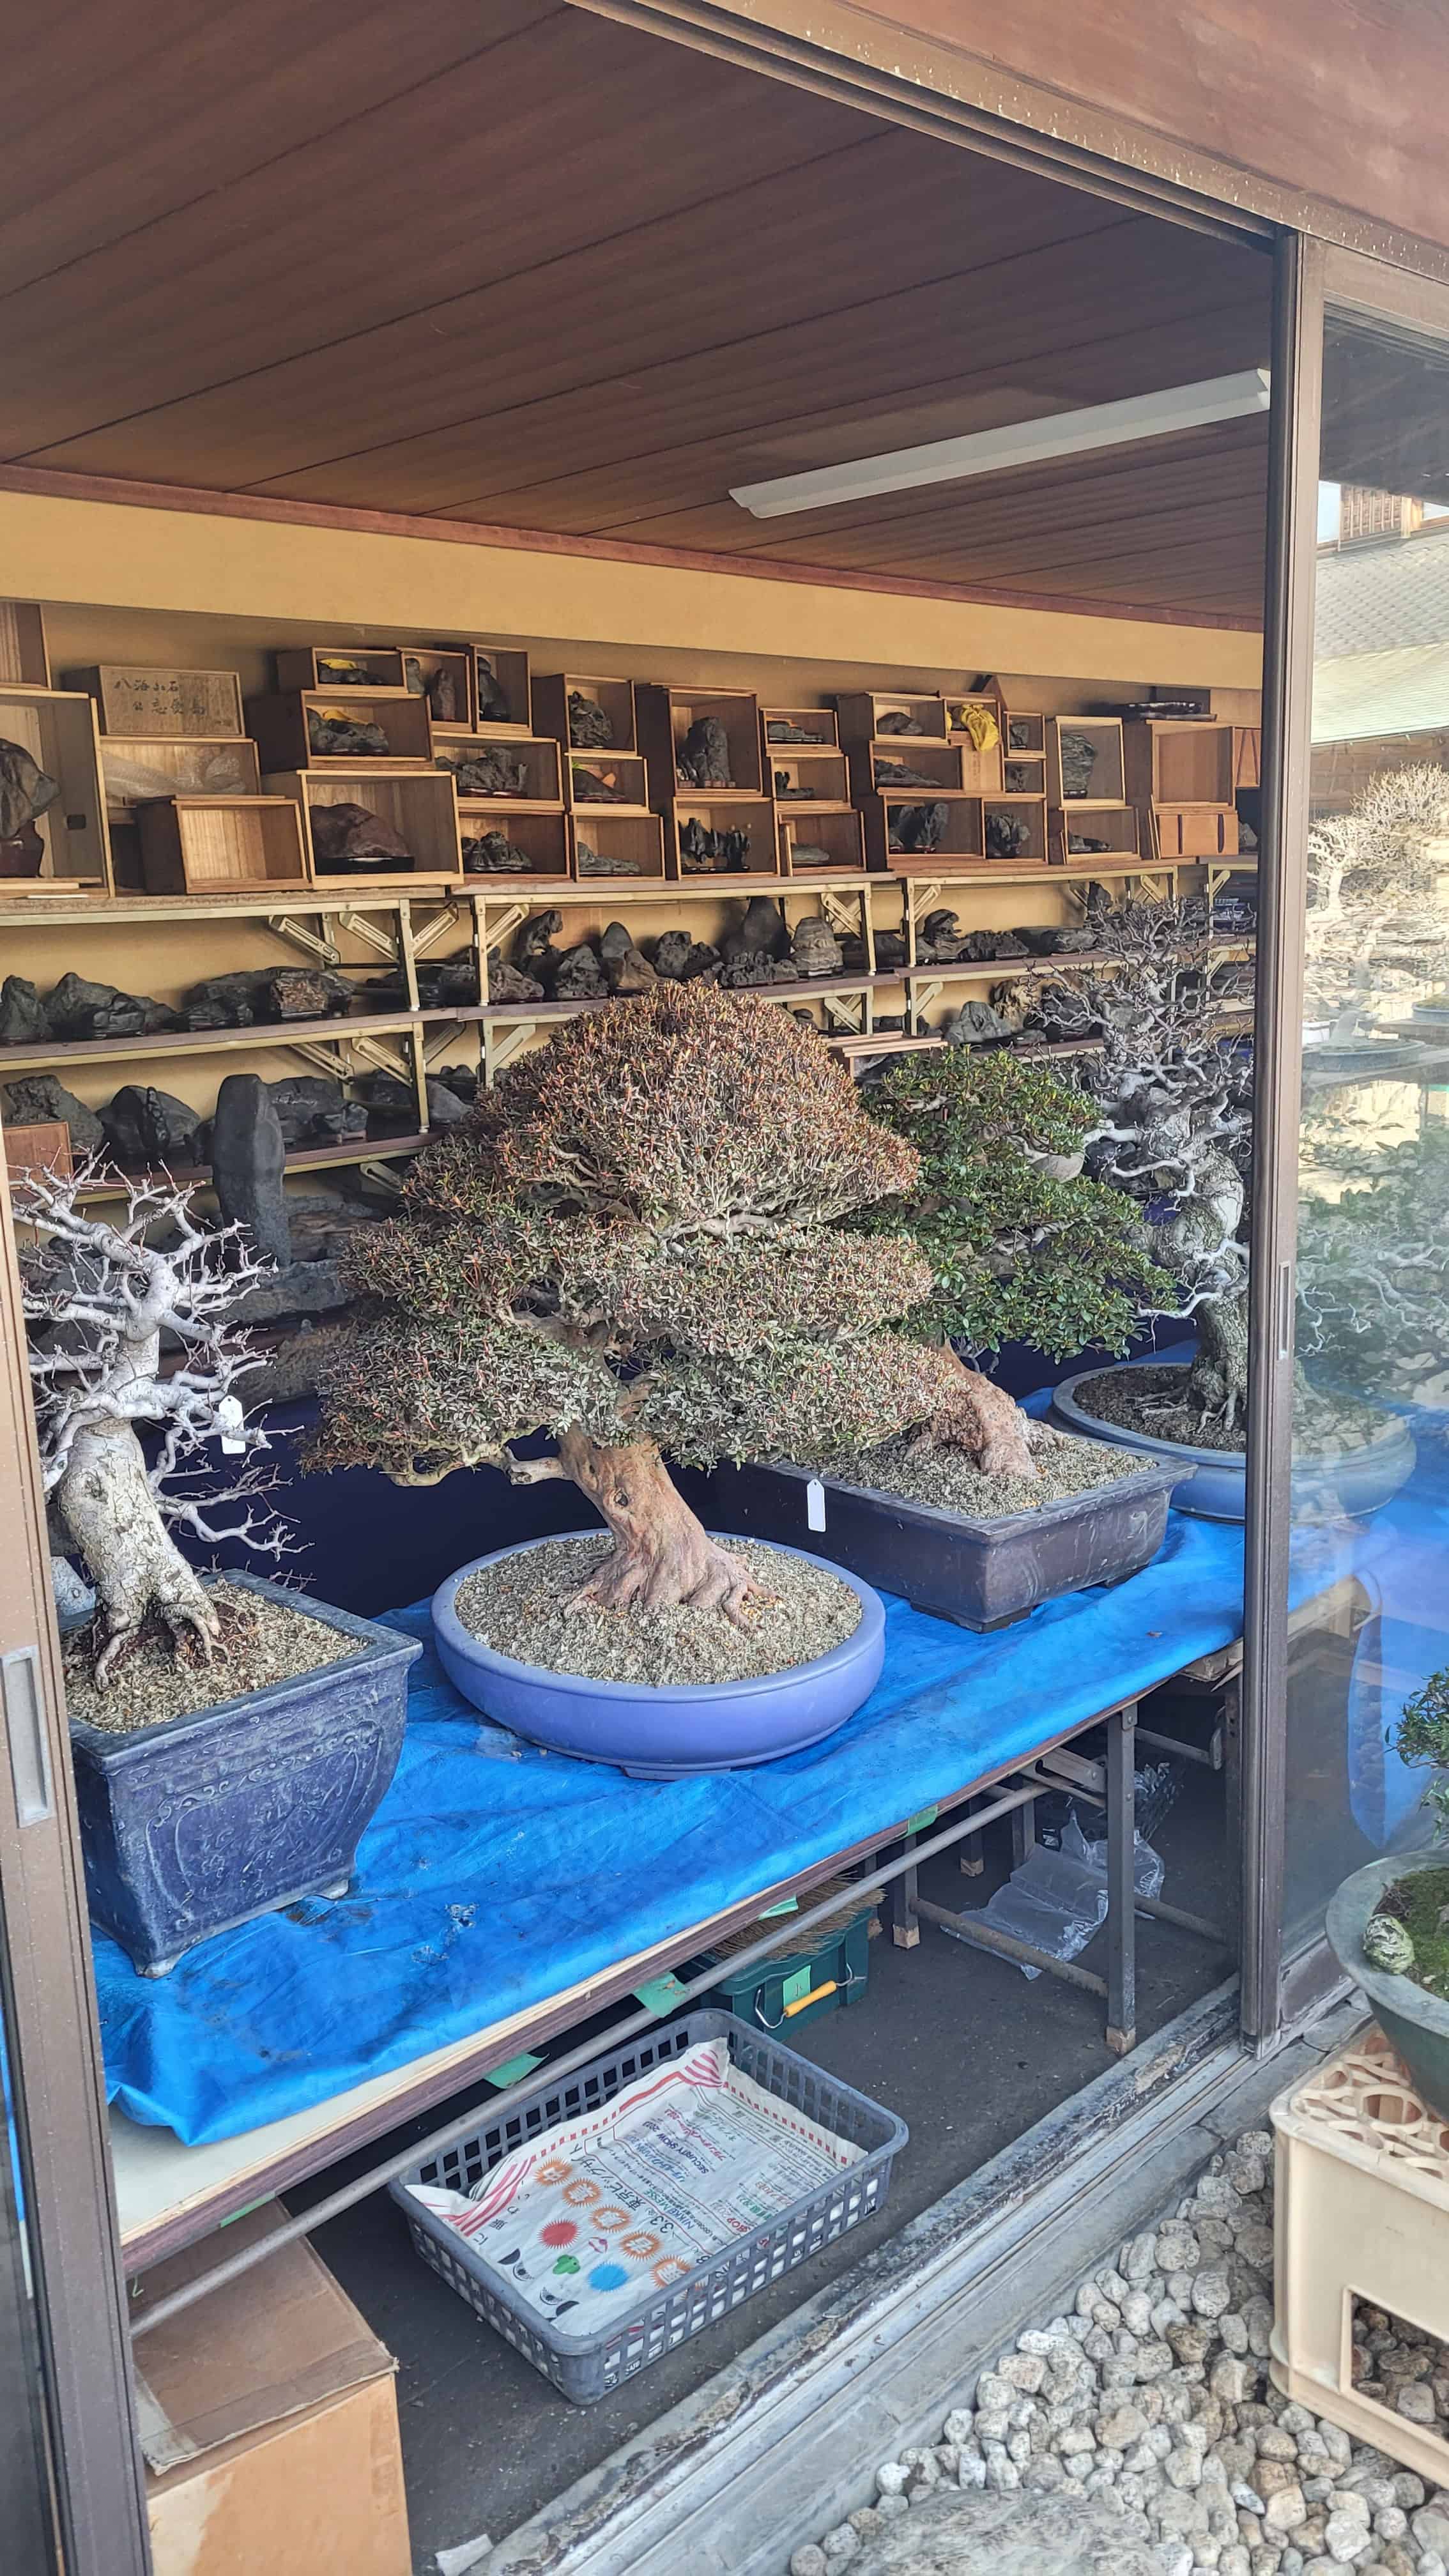 A group bonsai tree from kobayashi in Japan